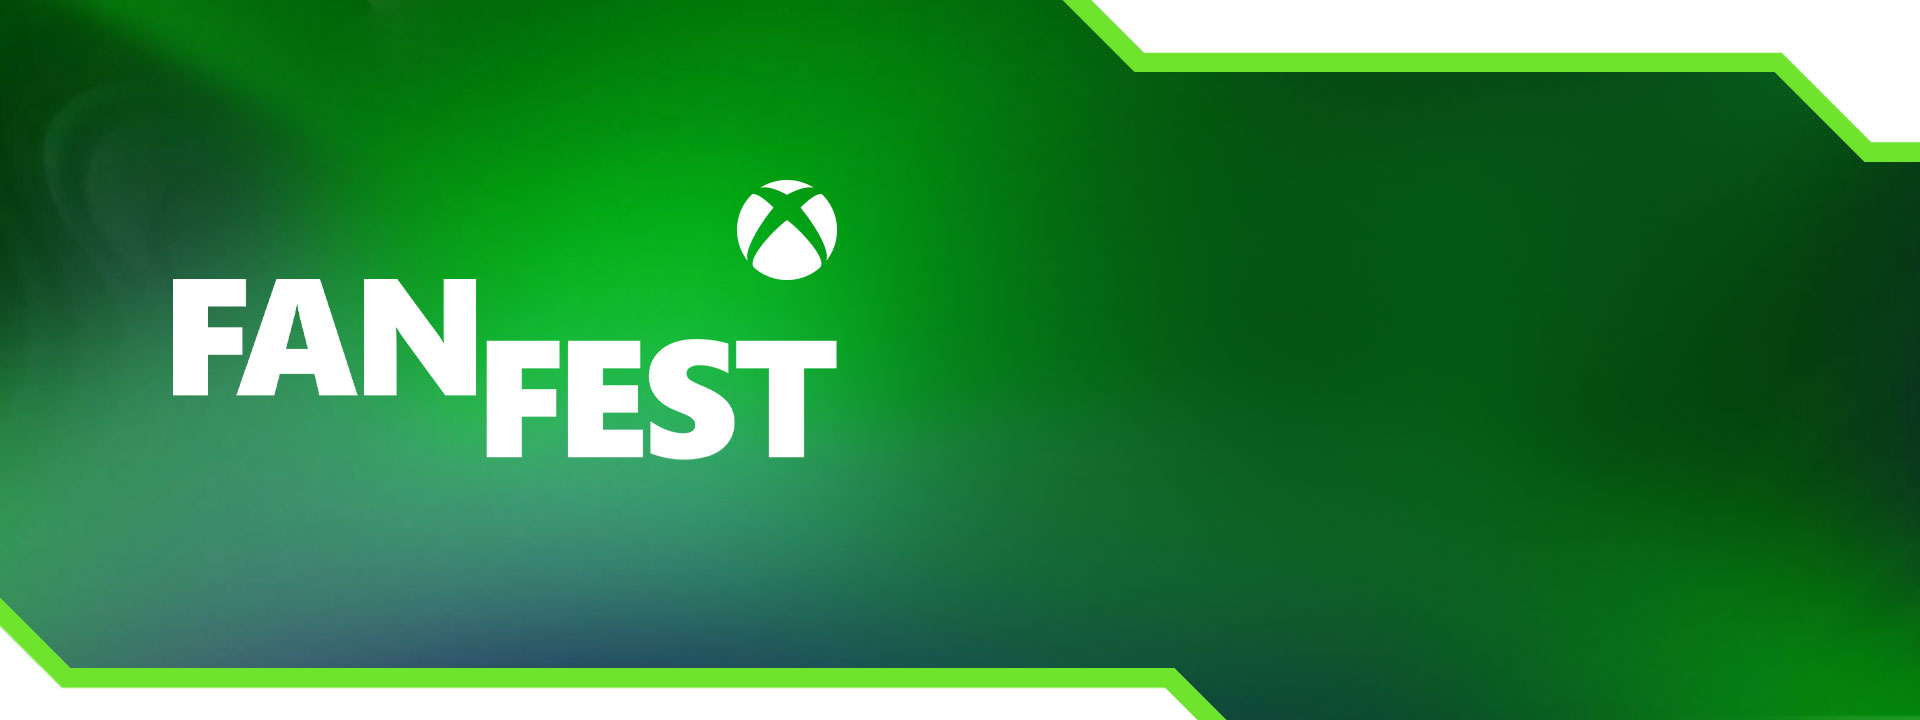 Сфера Xbox, FanFest с зеленым градиентом